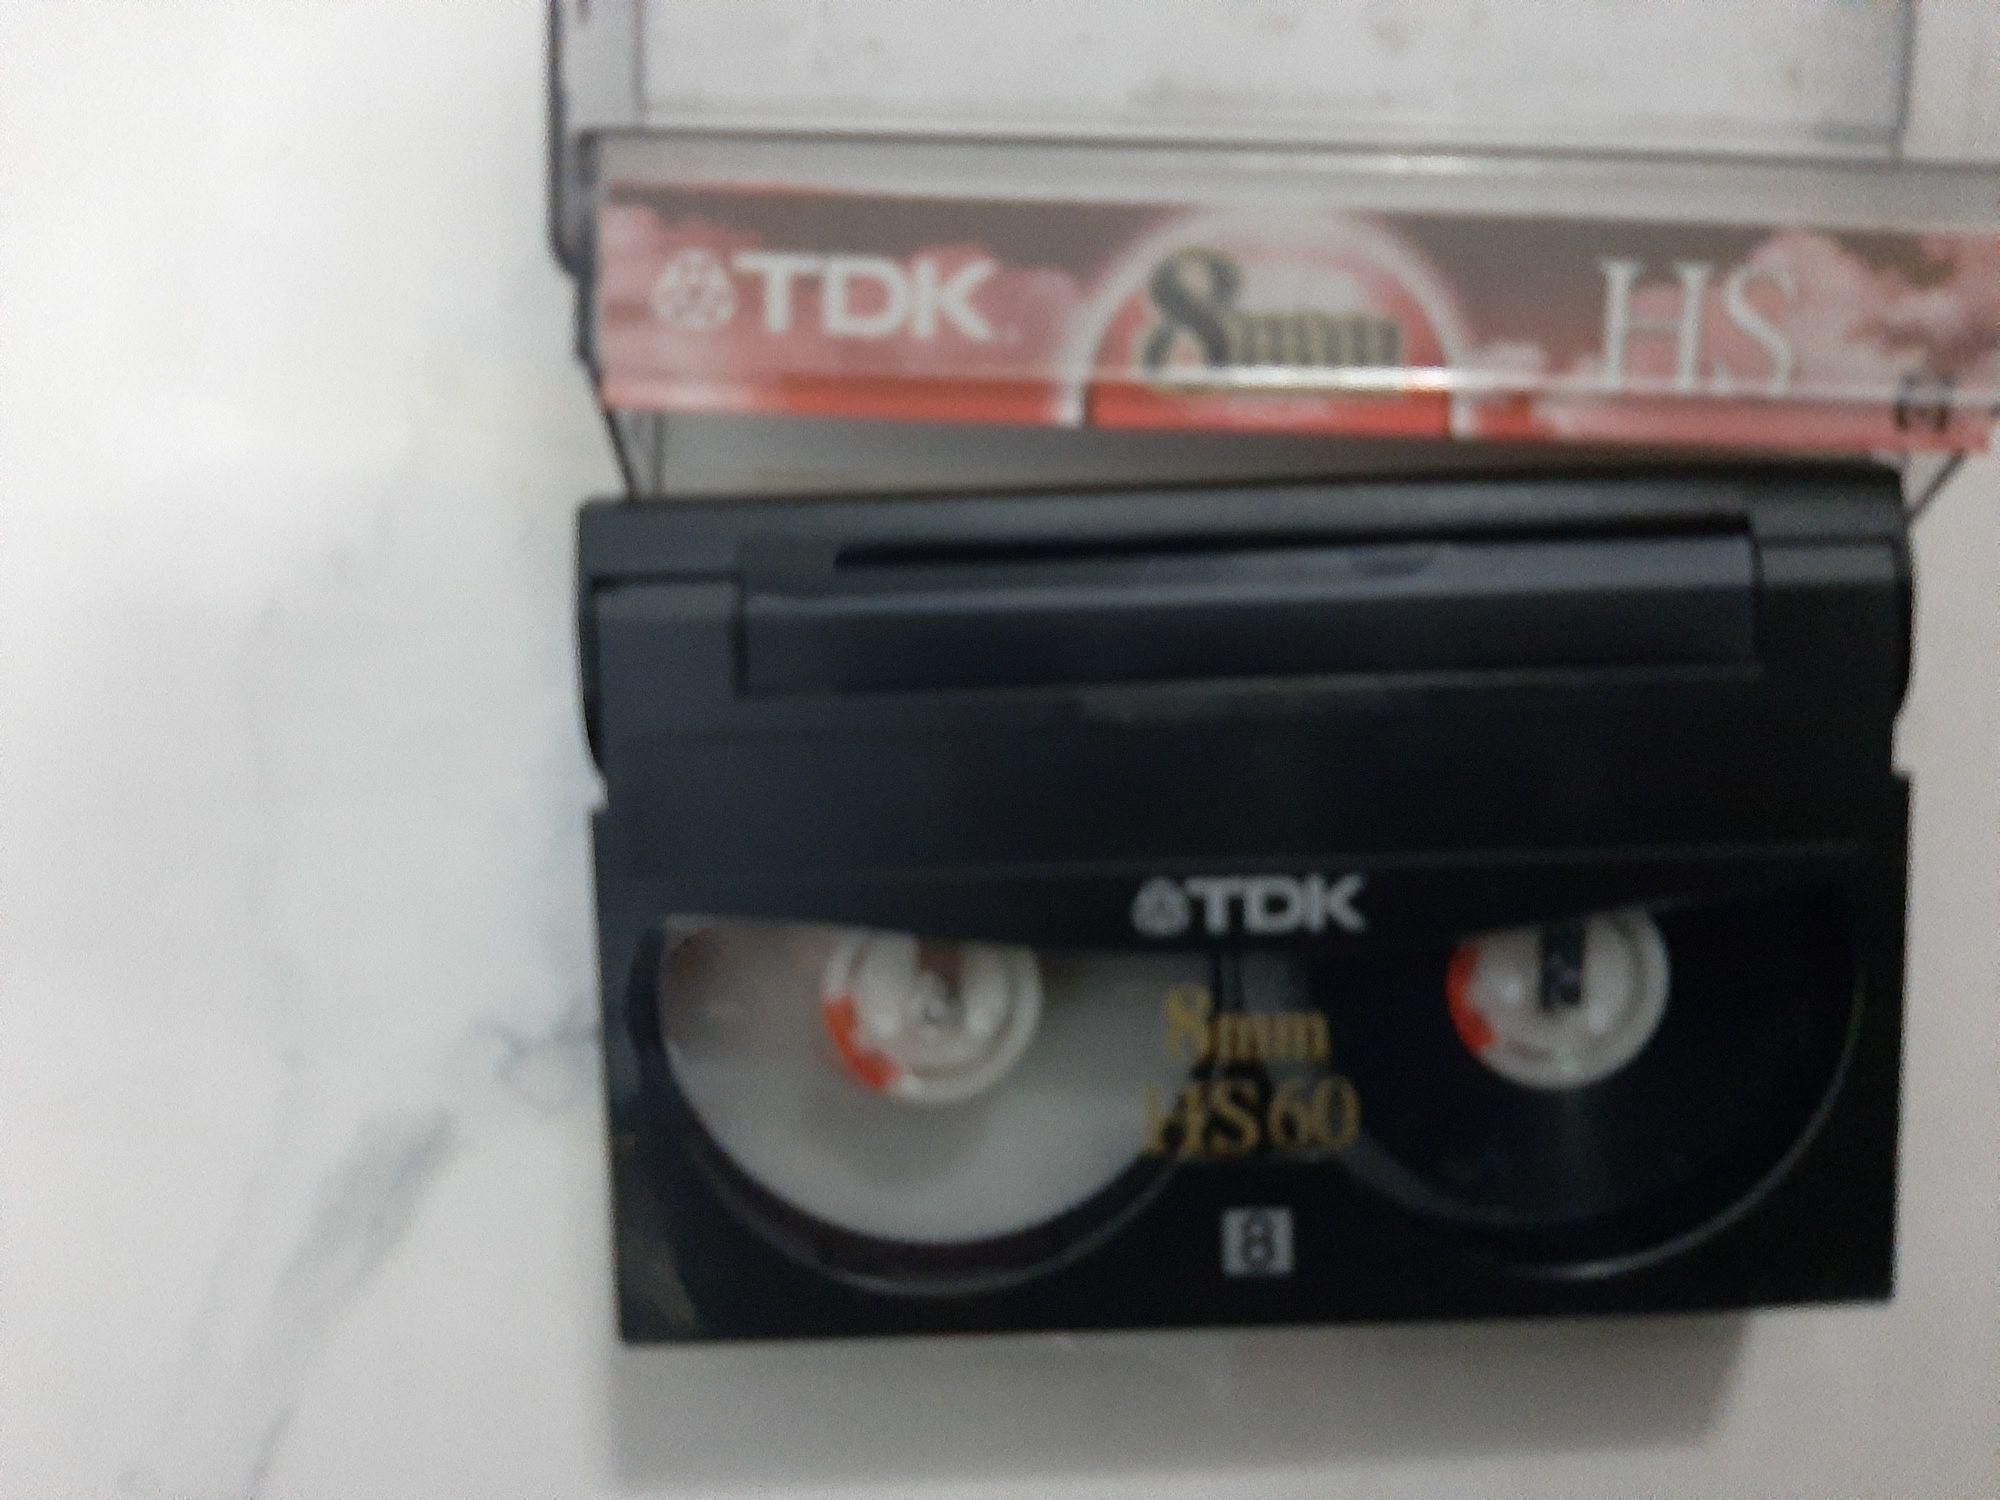 Касеты видео HI 8,,MINII DV, VHS фирменные нов.и бу.ДВД диски. Коробки